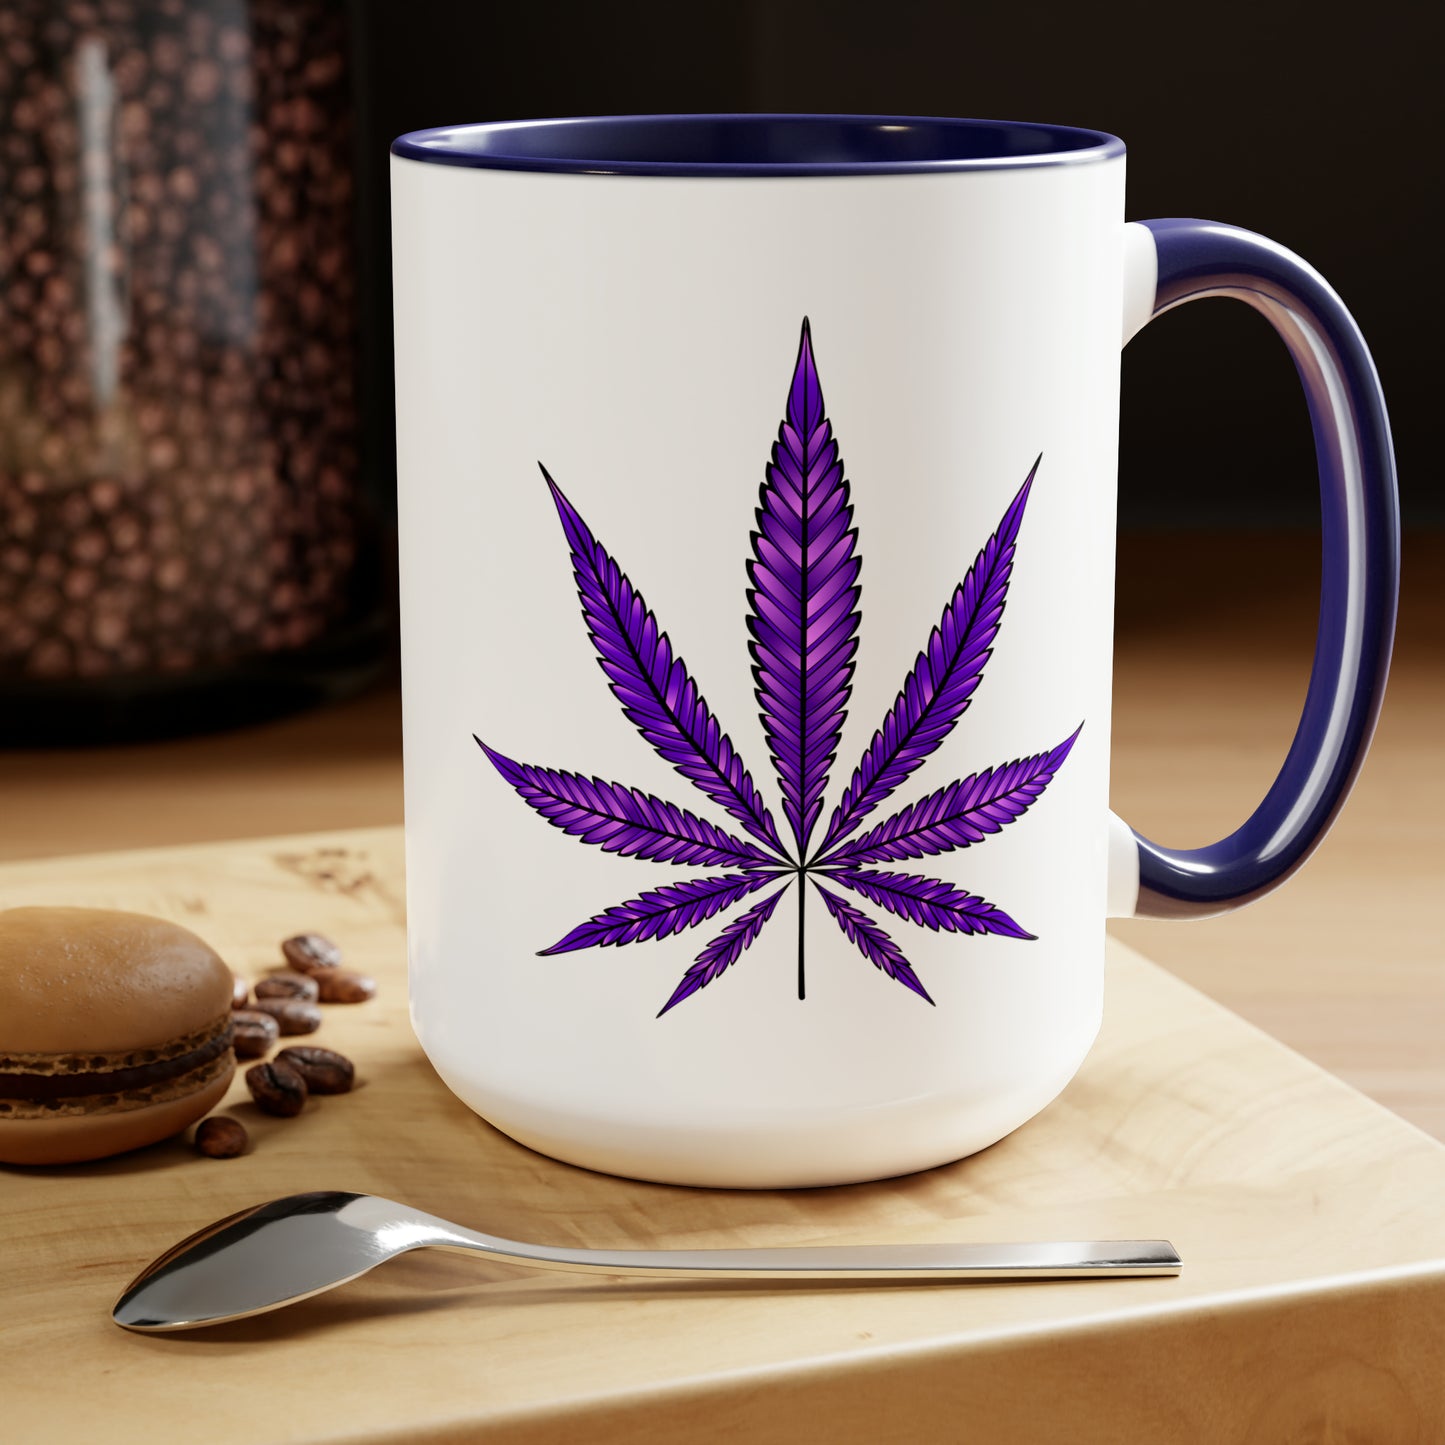 Purple Haze Marijuana Coffee Mug on a wooden table featuring a Purple Haze Marijuana leaf design, accompanied by coffee beans, a spoon, and a macaron.